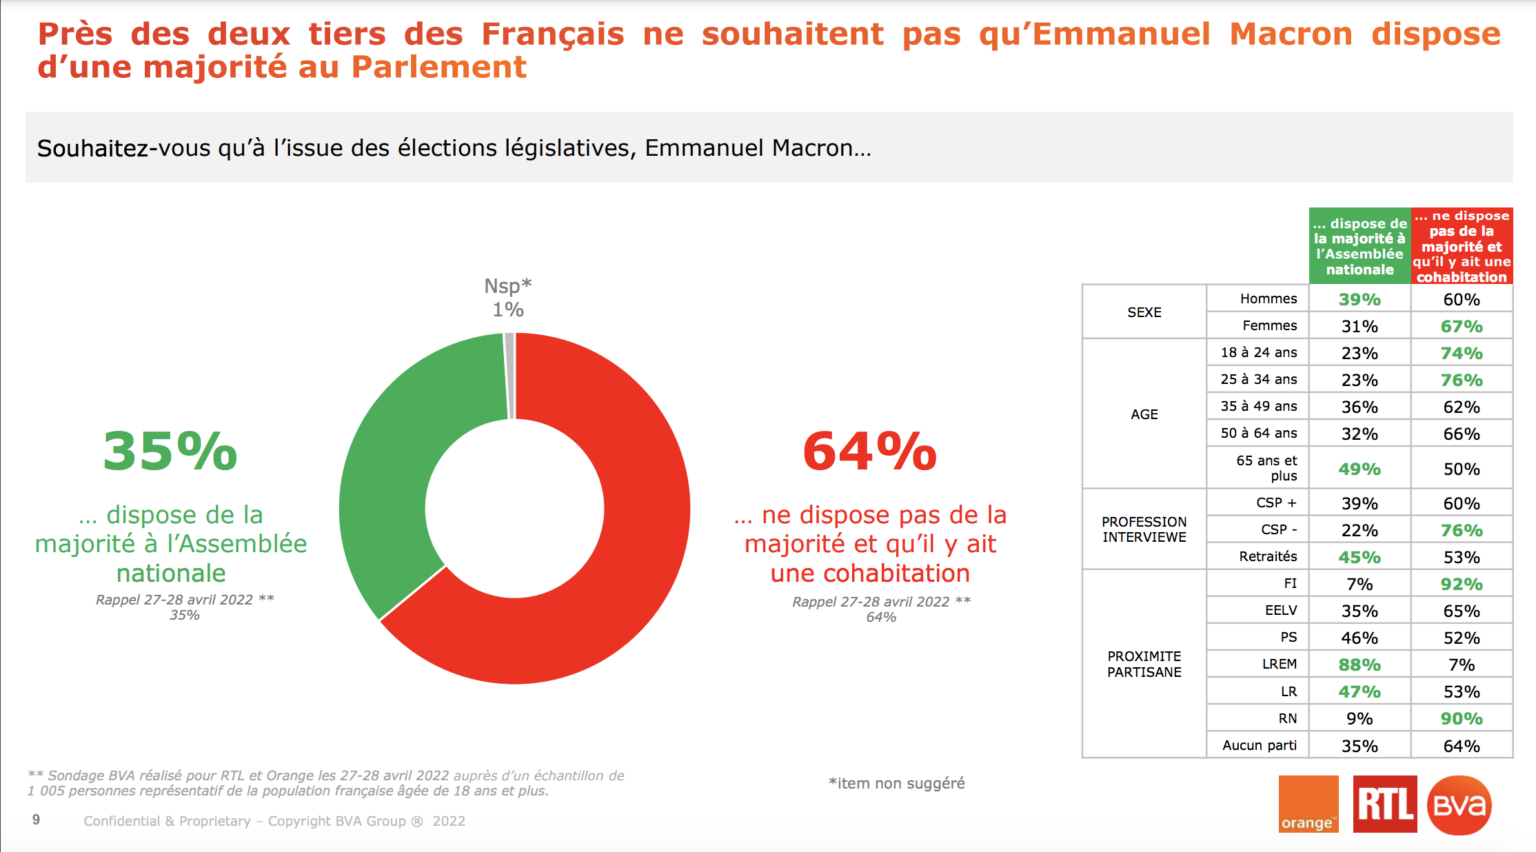 2 Français sur 3 ne veulent pas que Macron ait la majorité pour gouverner Capture-de%CC%81cran-2022-06-03-a%CC%80-10.13.05-1536x852